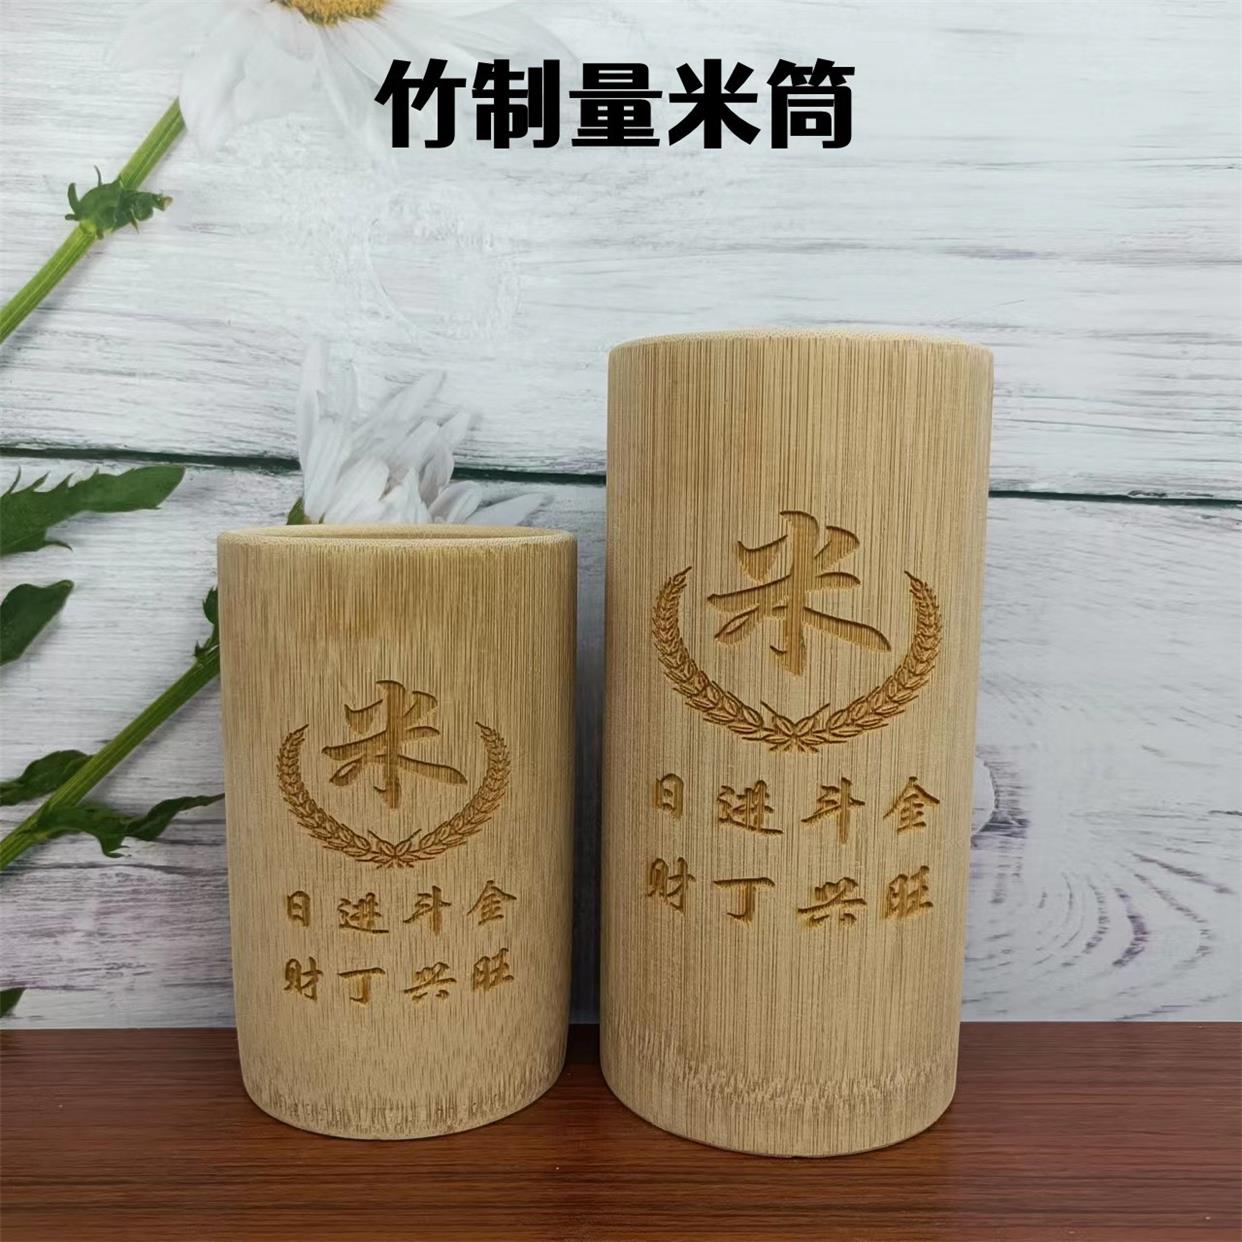 量米升子楠竹竹筒舀米杯老式米升筒量米筒量米器家用无漆米斗-封面